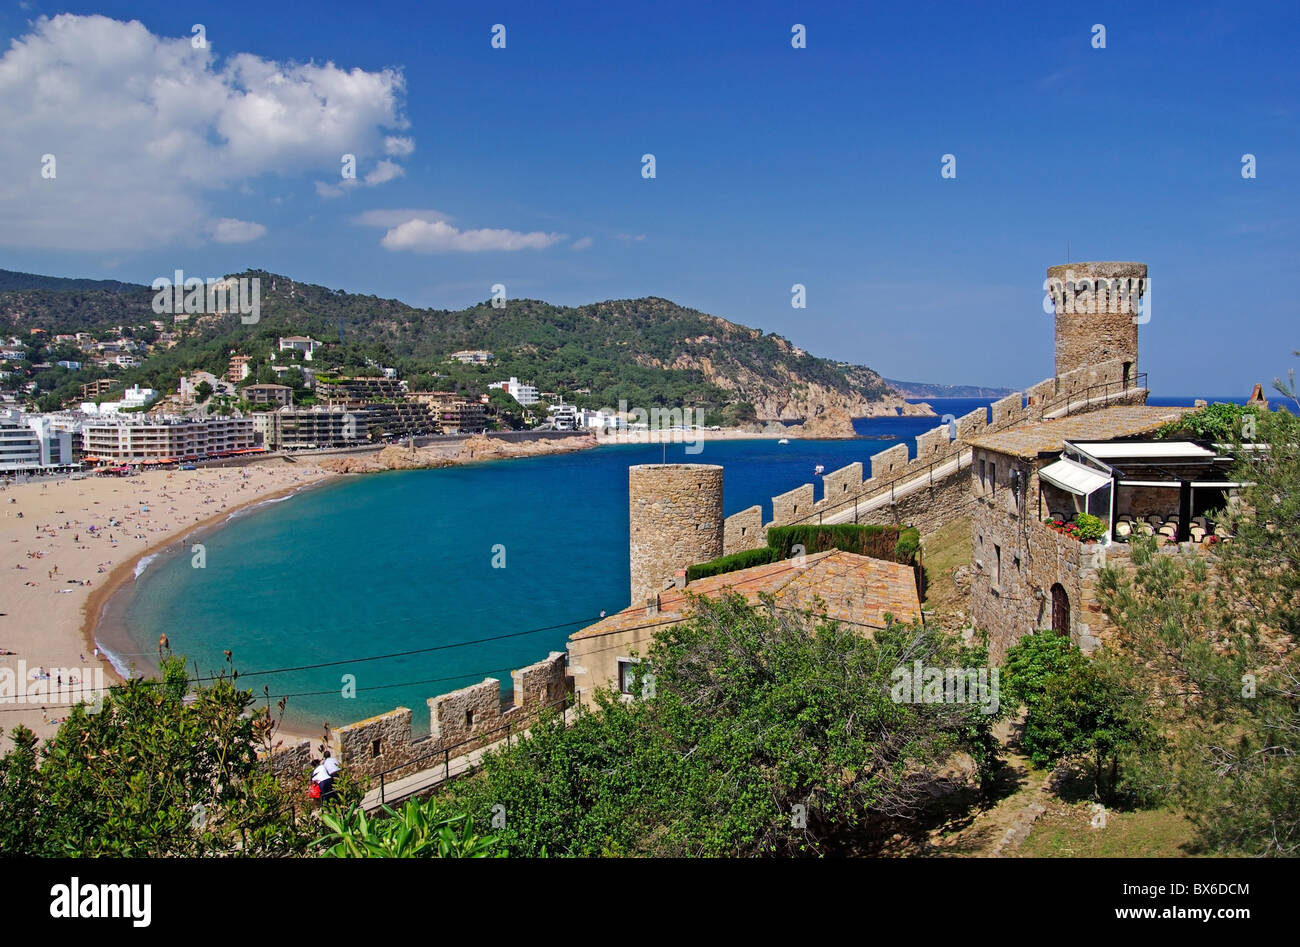 Stadtbild von Tossa de Mar, Costa Brava, Spanien. Mehr in meiner Galerie. Stockfoto